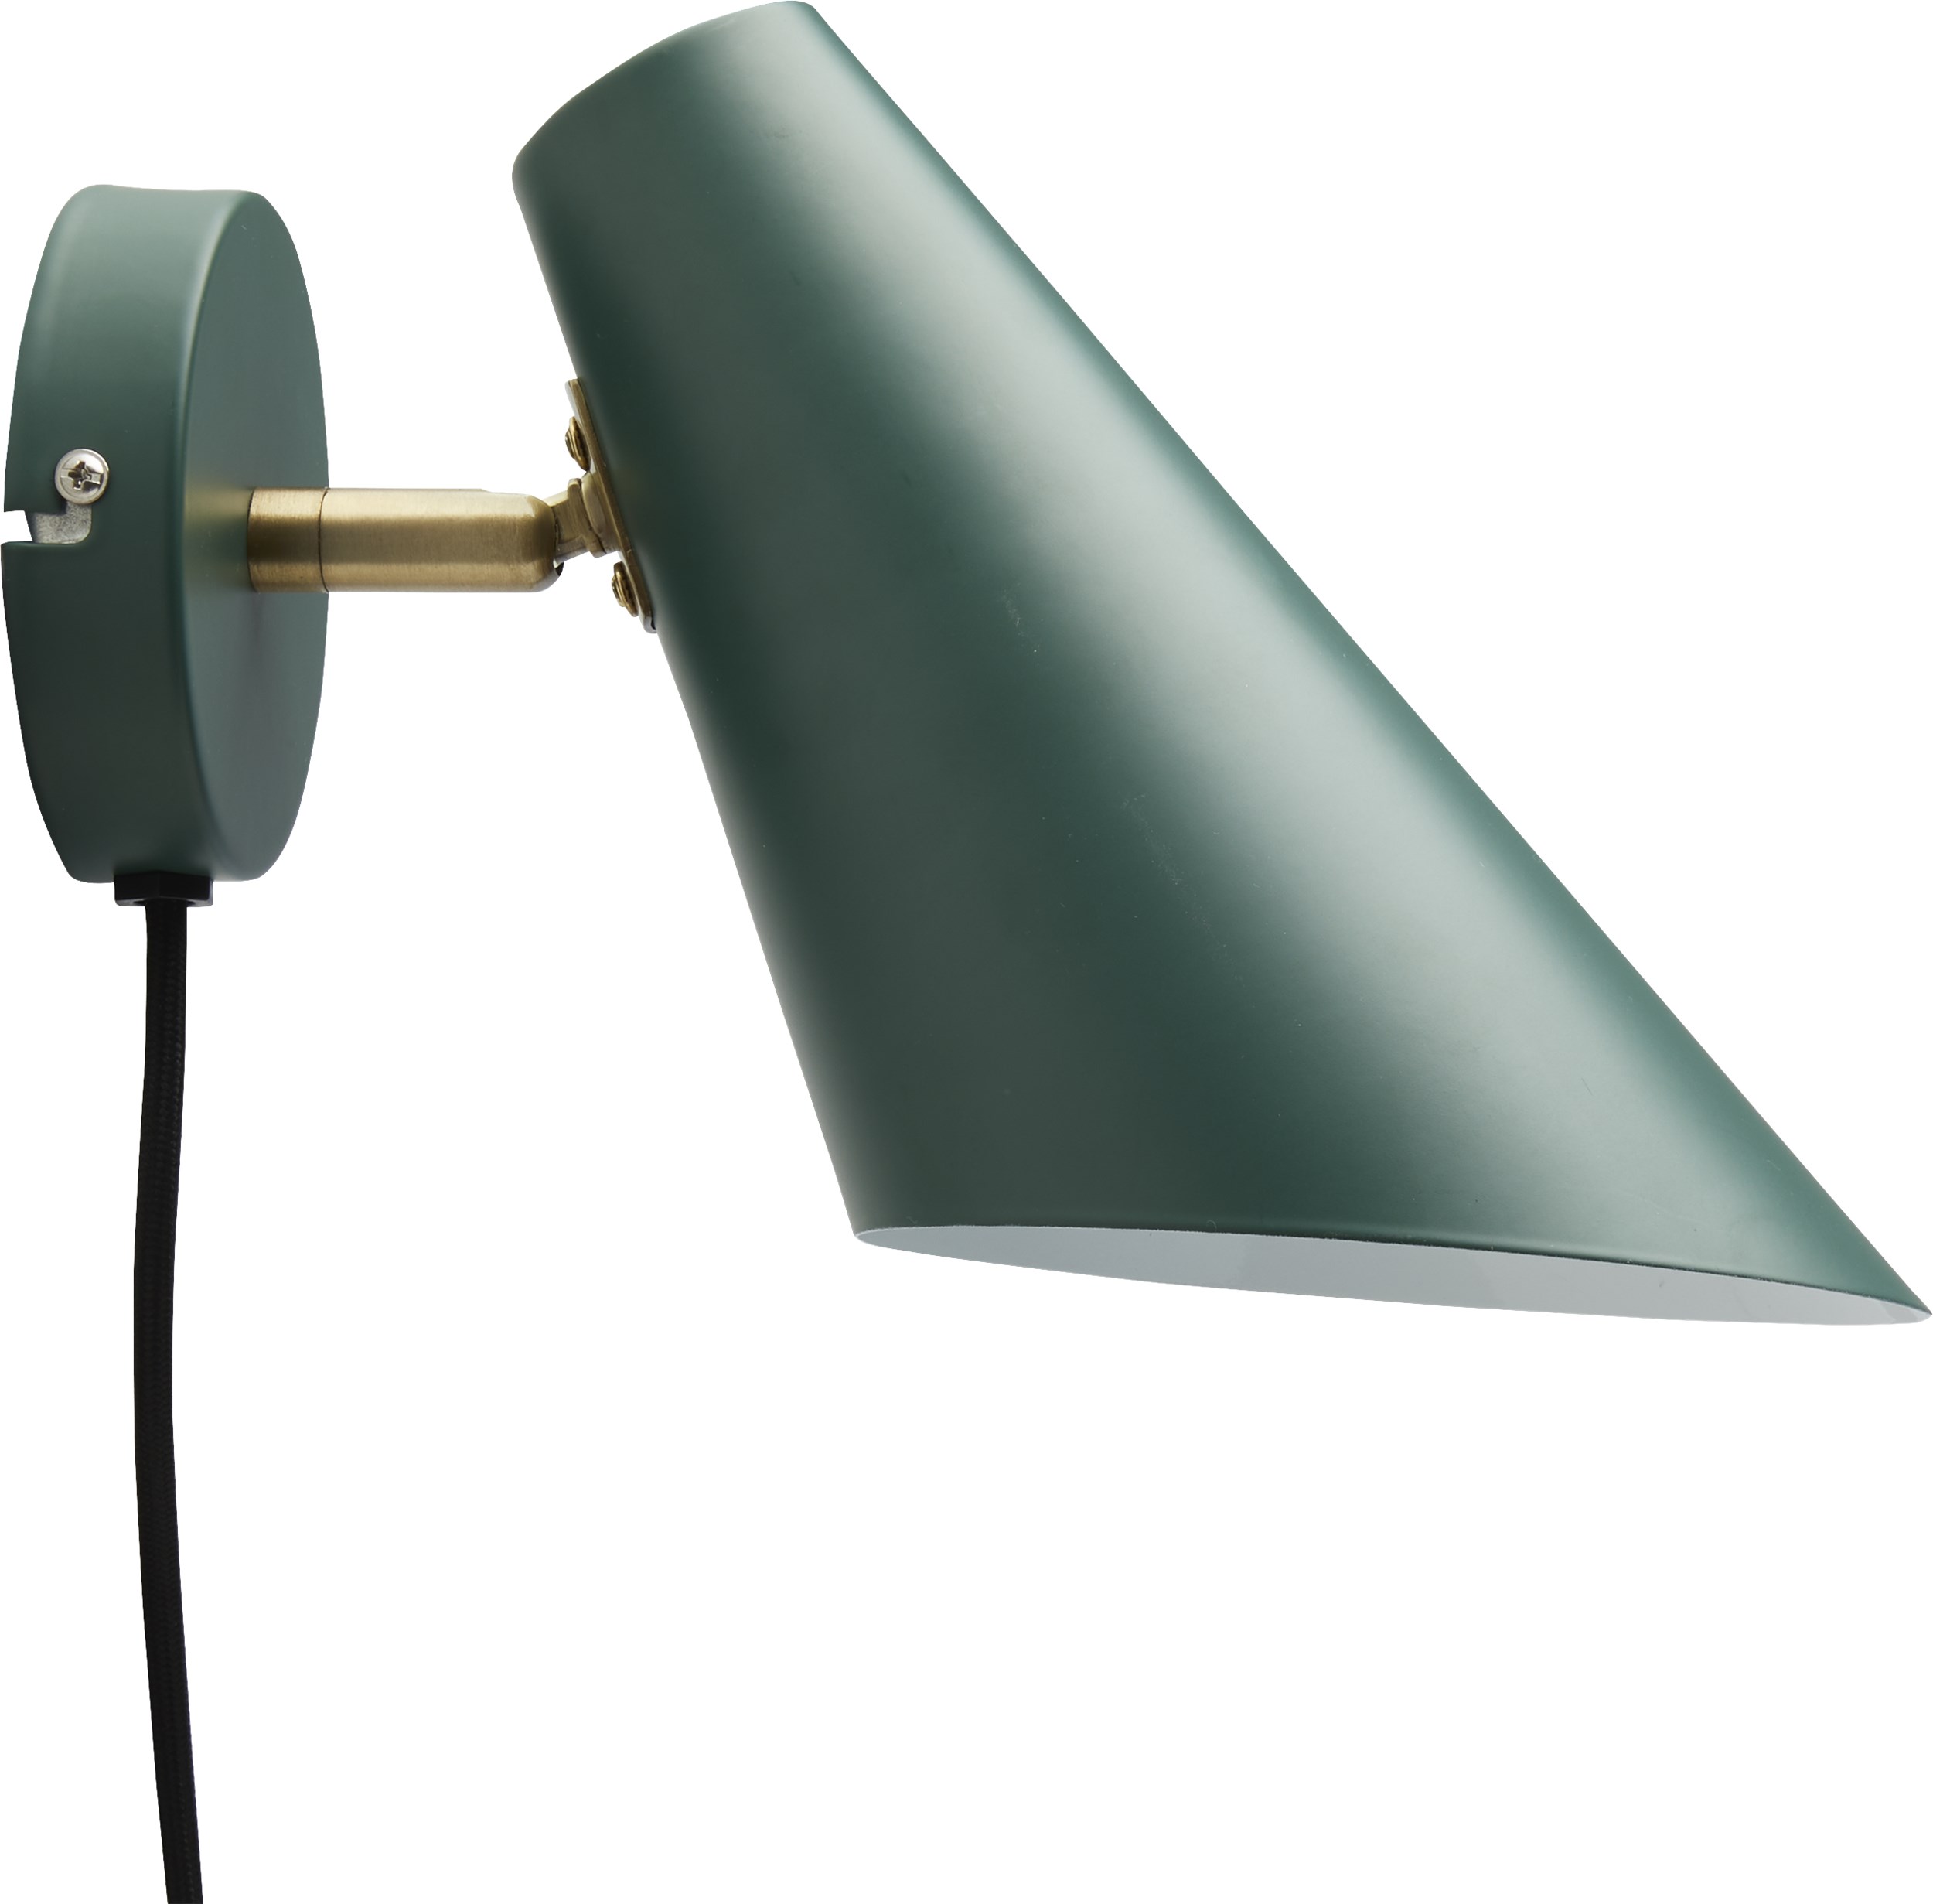 Cale Vägglampa 24,5 x 24,5 cm - Grön metallskärm/bas, arm i grönt/mässing och svart textilsladd